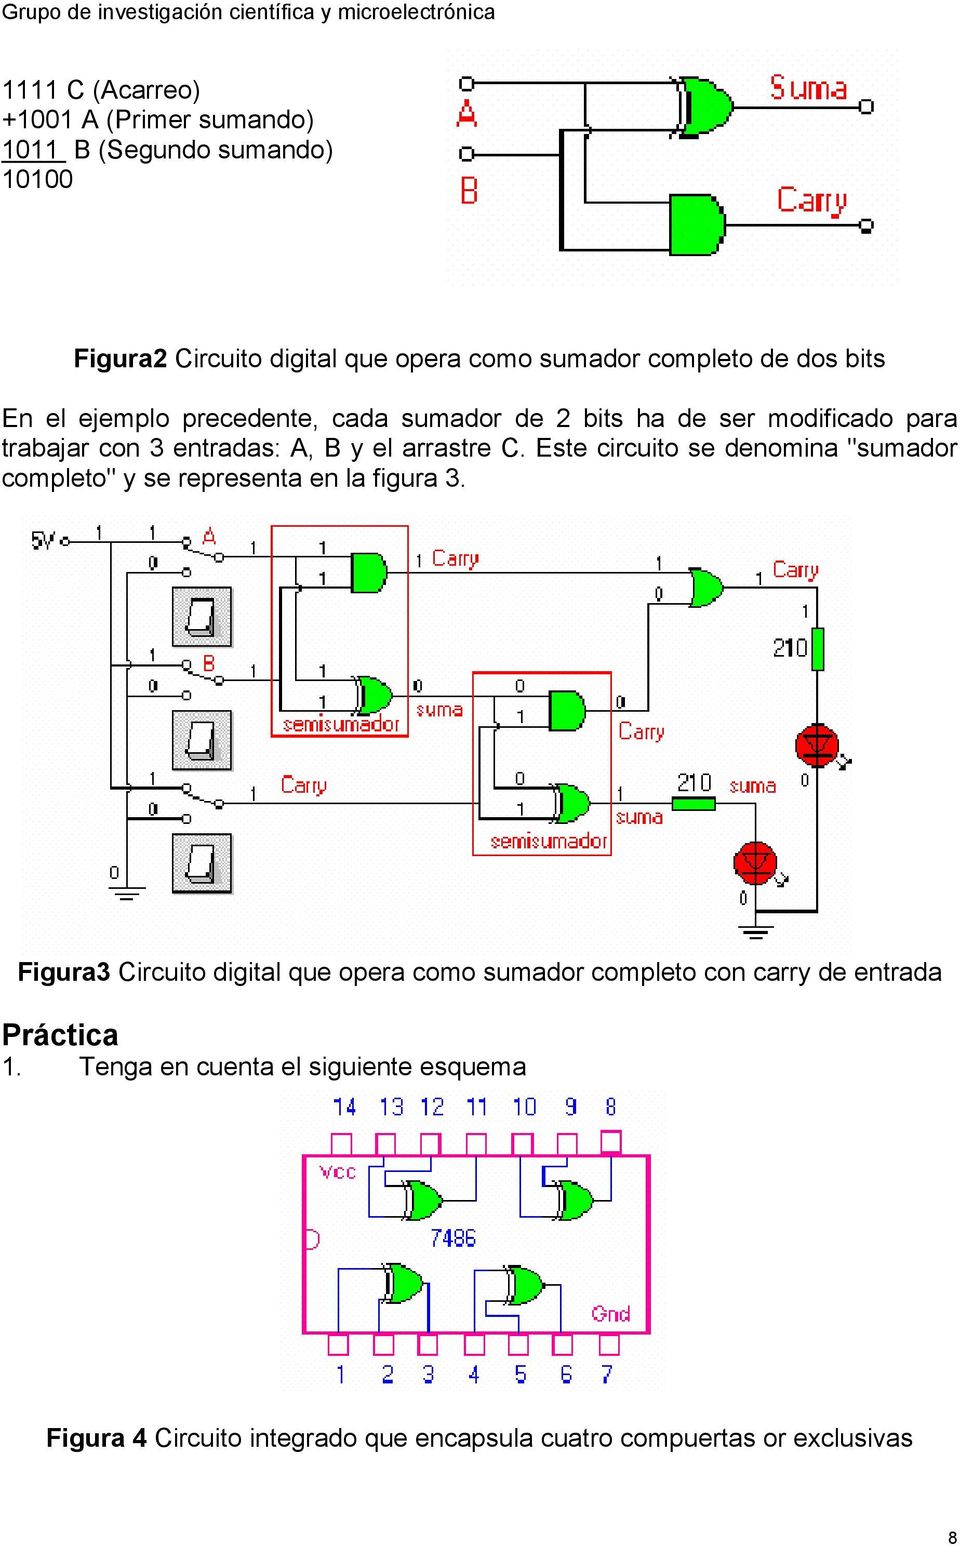 Este circuito se denomina "sumador completo" y se representa en la figura 3.